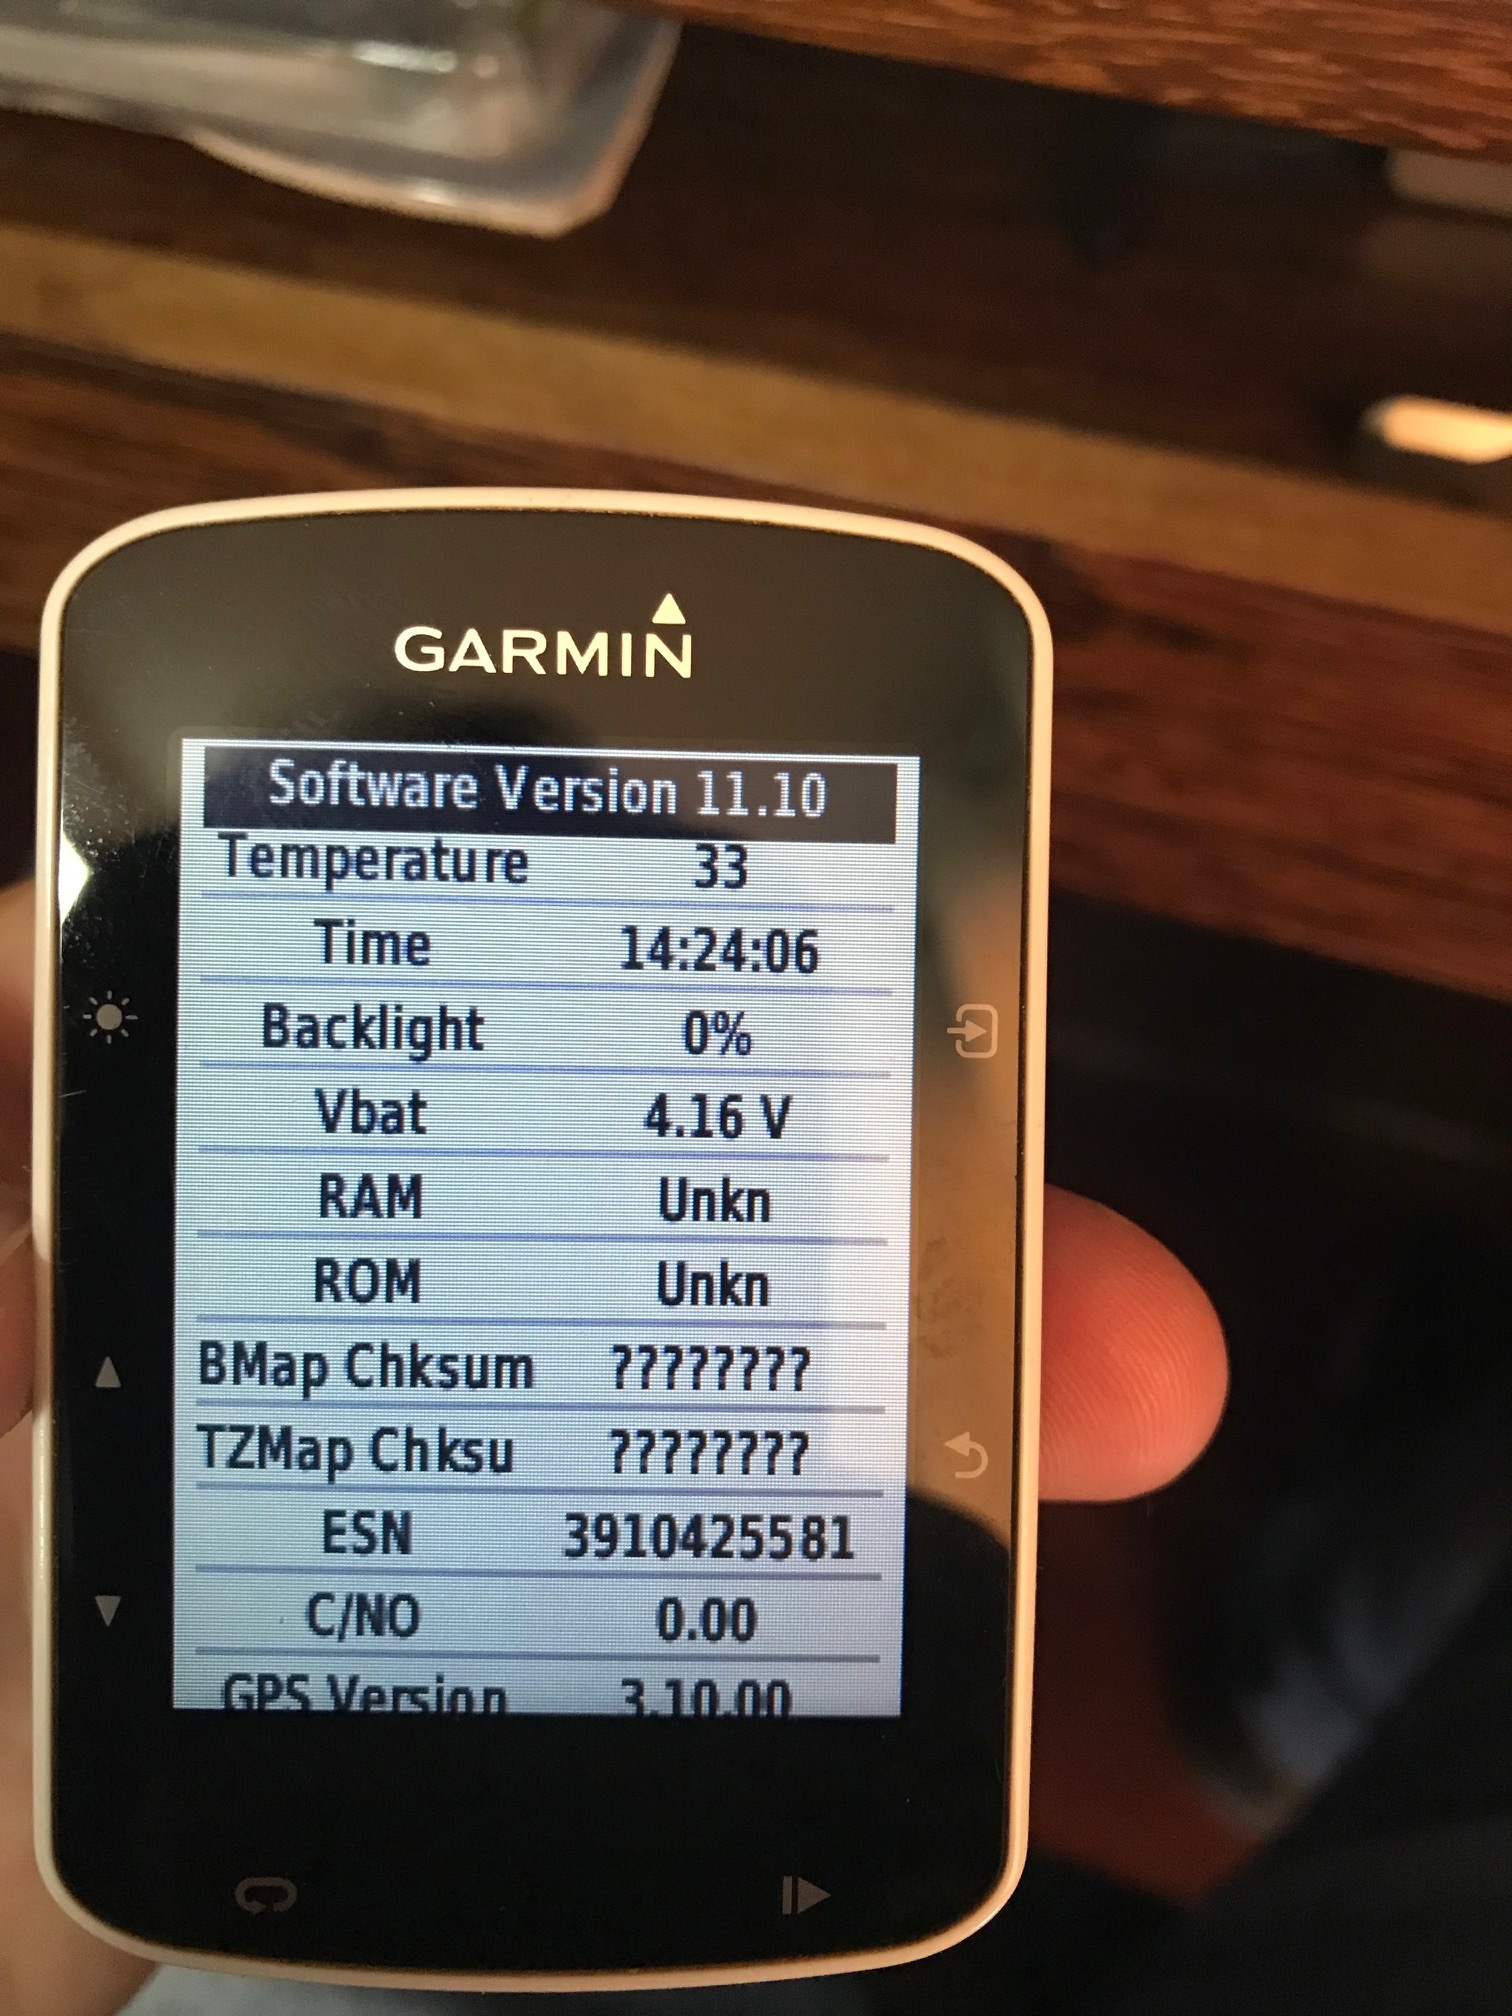 edge 520 memory / rom and baseman checksum test fail - Edge 520/520 - Cycling - Garmin Forums